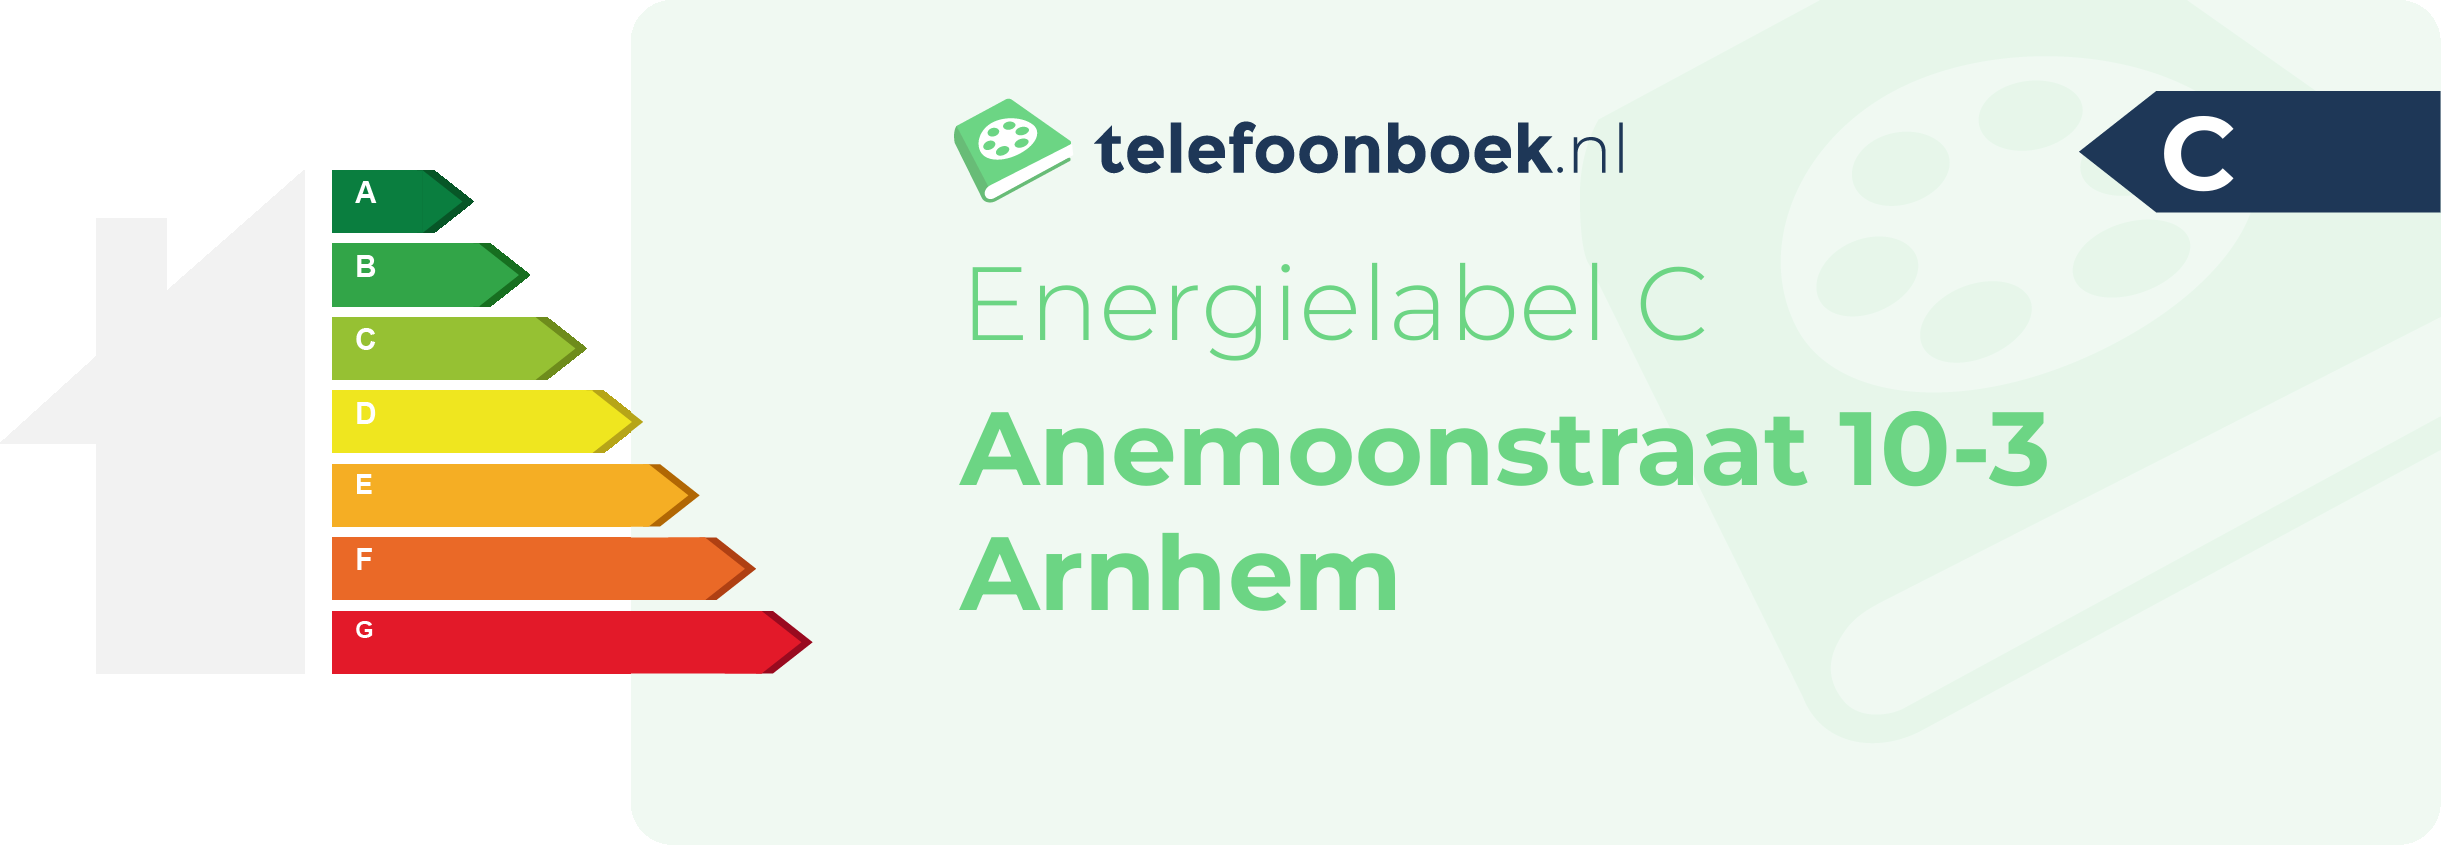 Energielabel Anemoonstraat 10-3 Arnhem